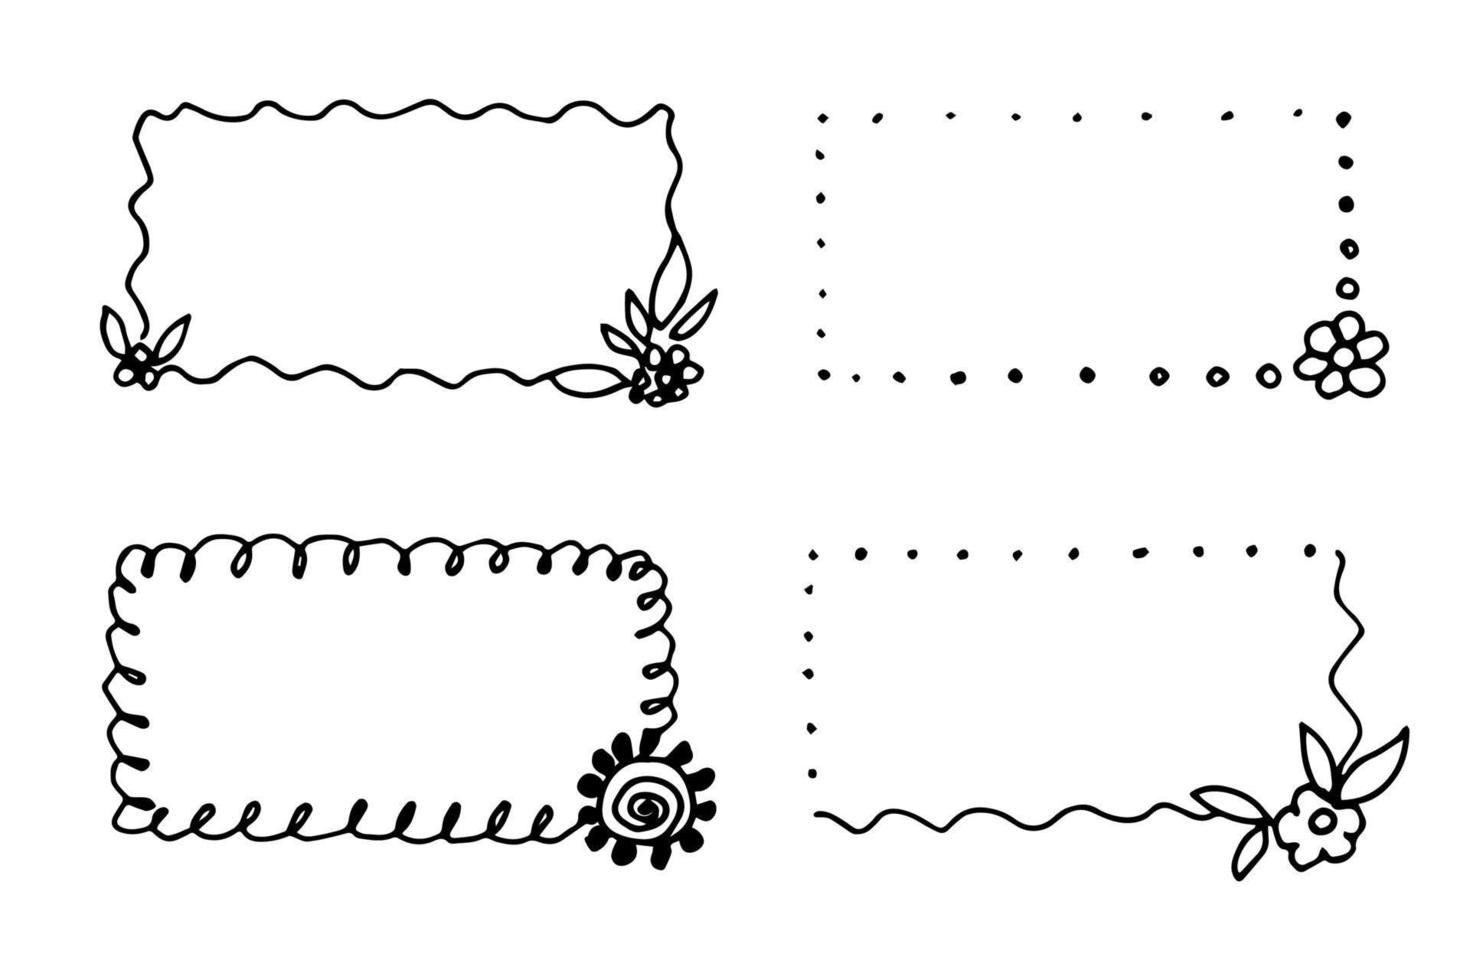 ritad för hand enkel vektor illustration i svart översikt. uppsättning av rektangulär blommig ramar. för etiketter, klistermärken, pris taggar, vykort.